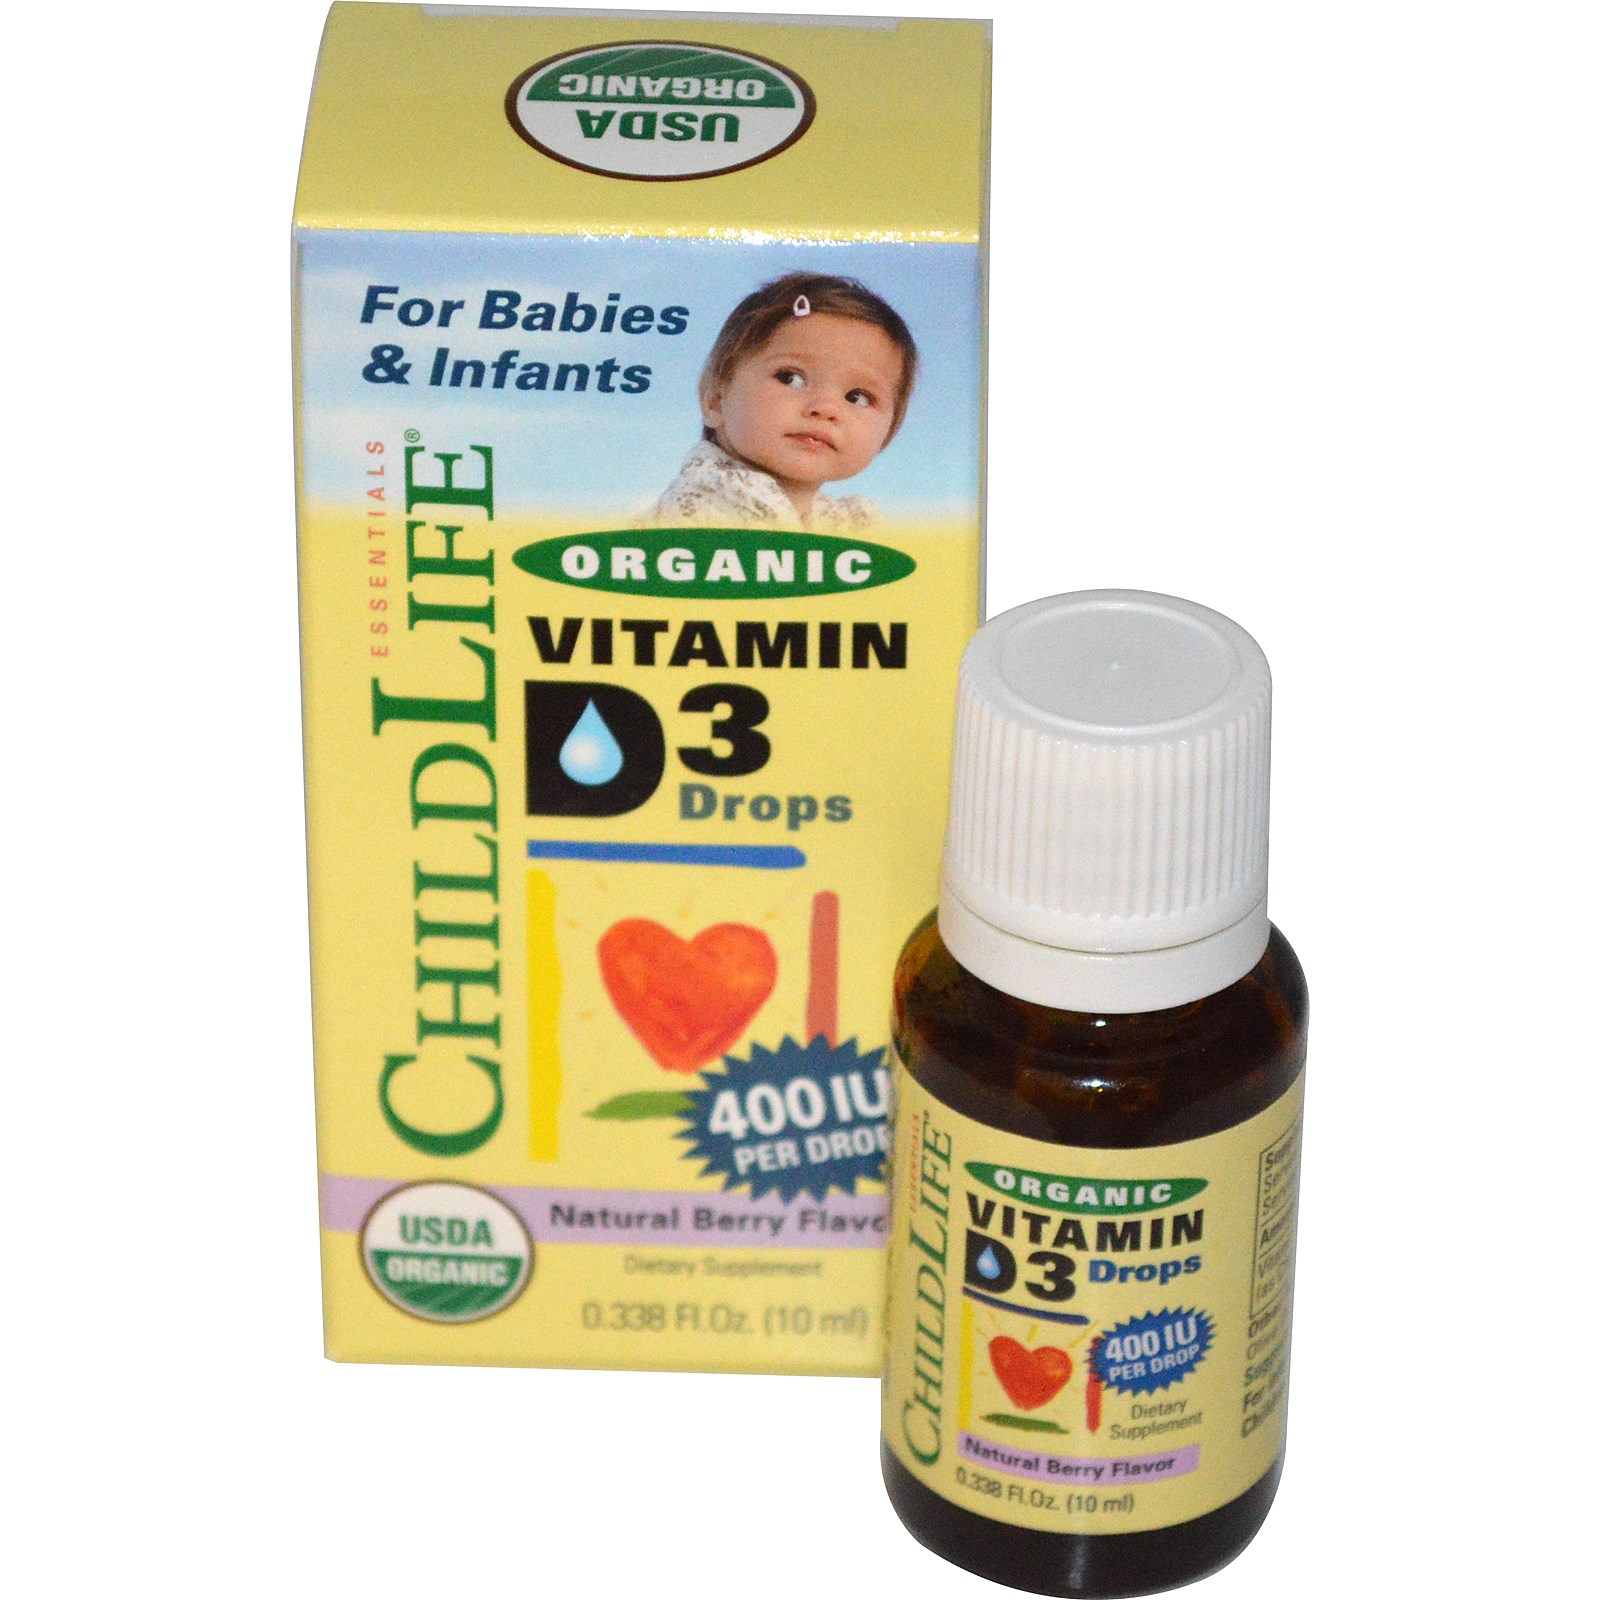 Vitamin D3 giọt hữu cơ, hiệu ChildLife, 400 IU, 0.338 fl oz (10 ml)